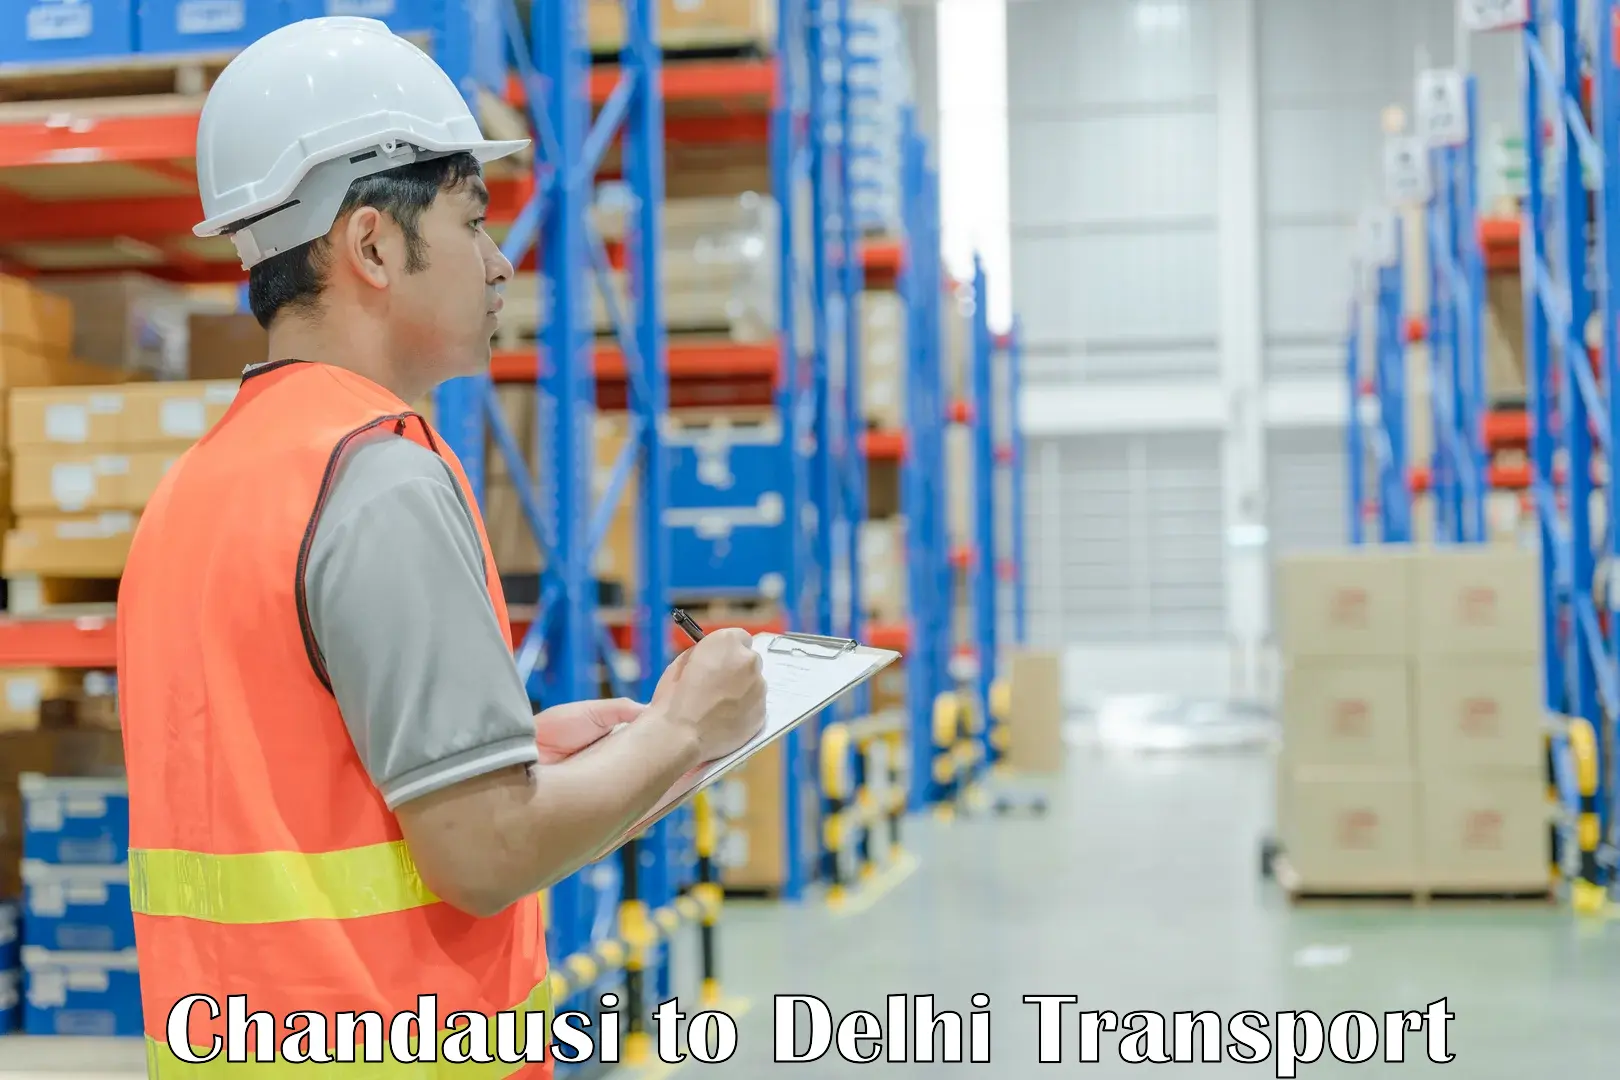 Air freight transport services Chandausi to Jamia Millia Islamia New Delhi